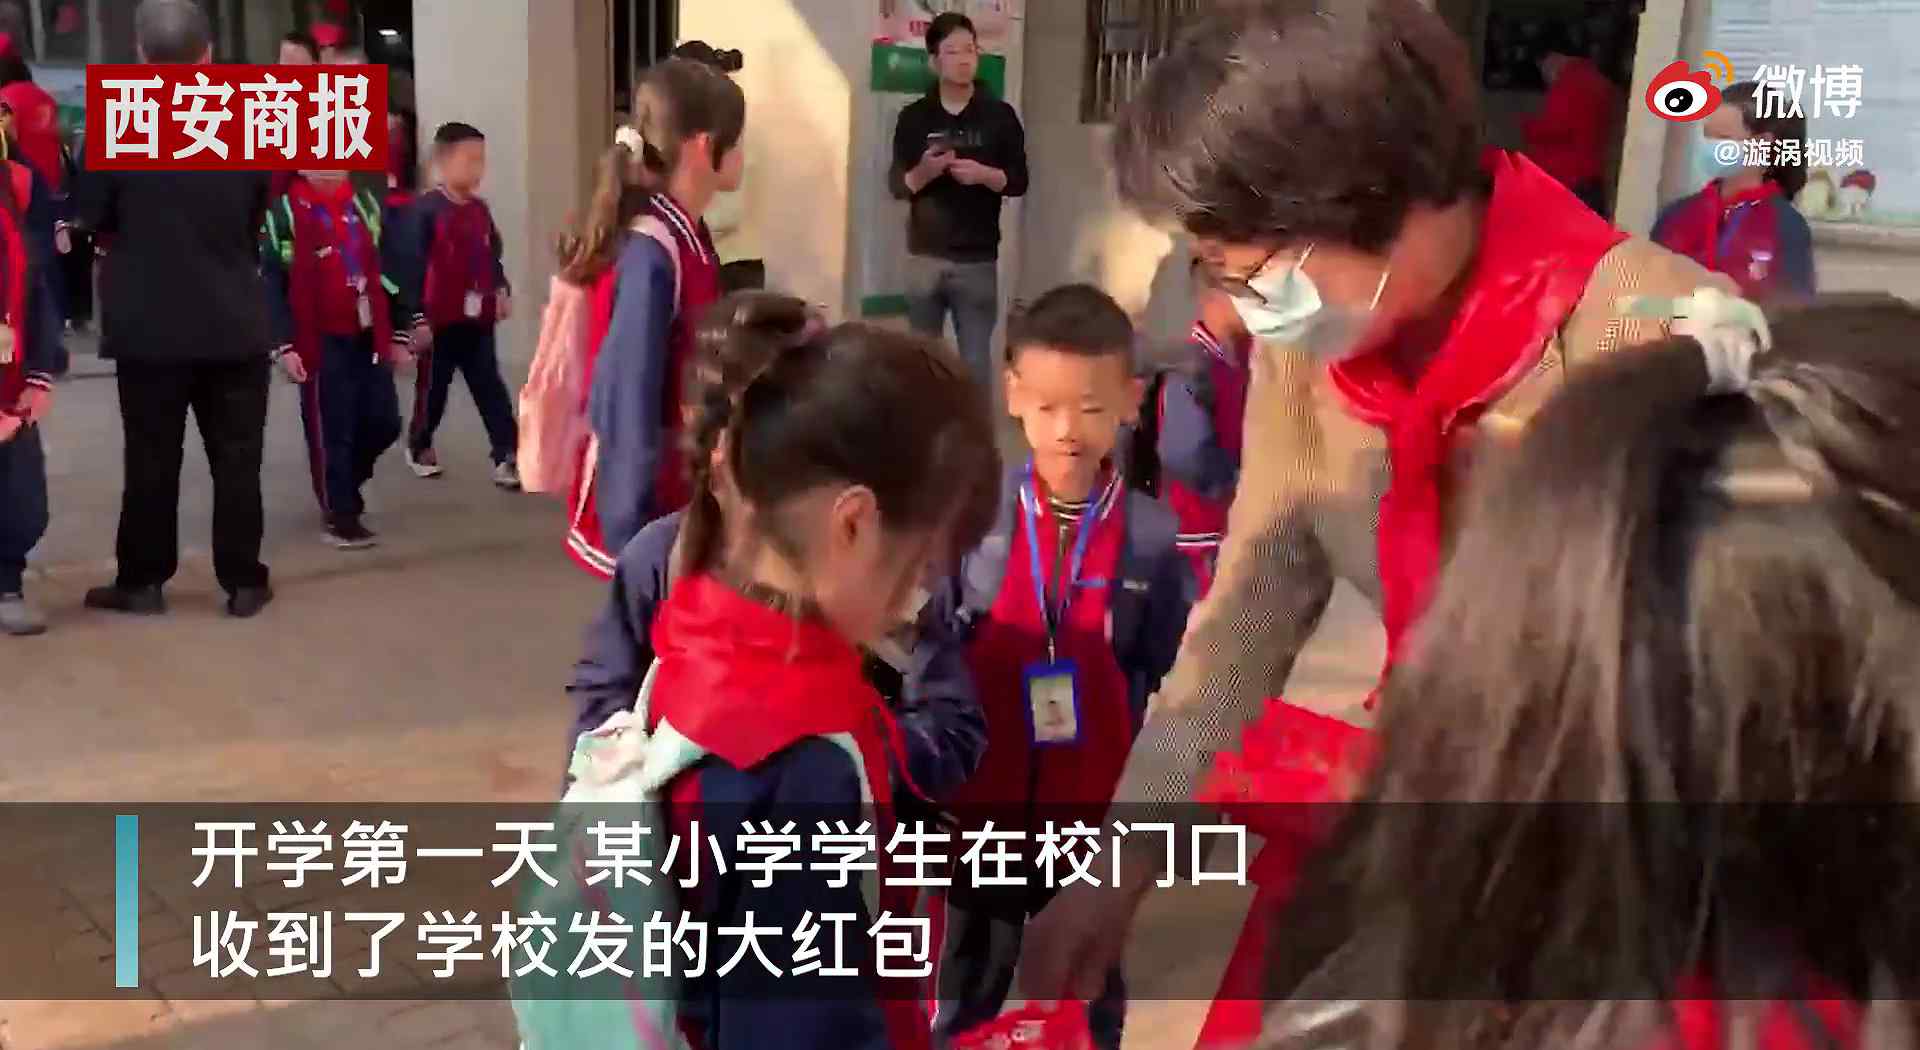 广东一小学开学给学生发红包 学生们打开后表情亮了